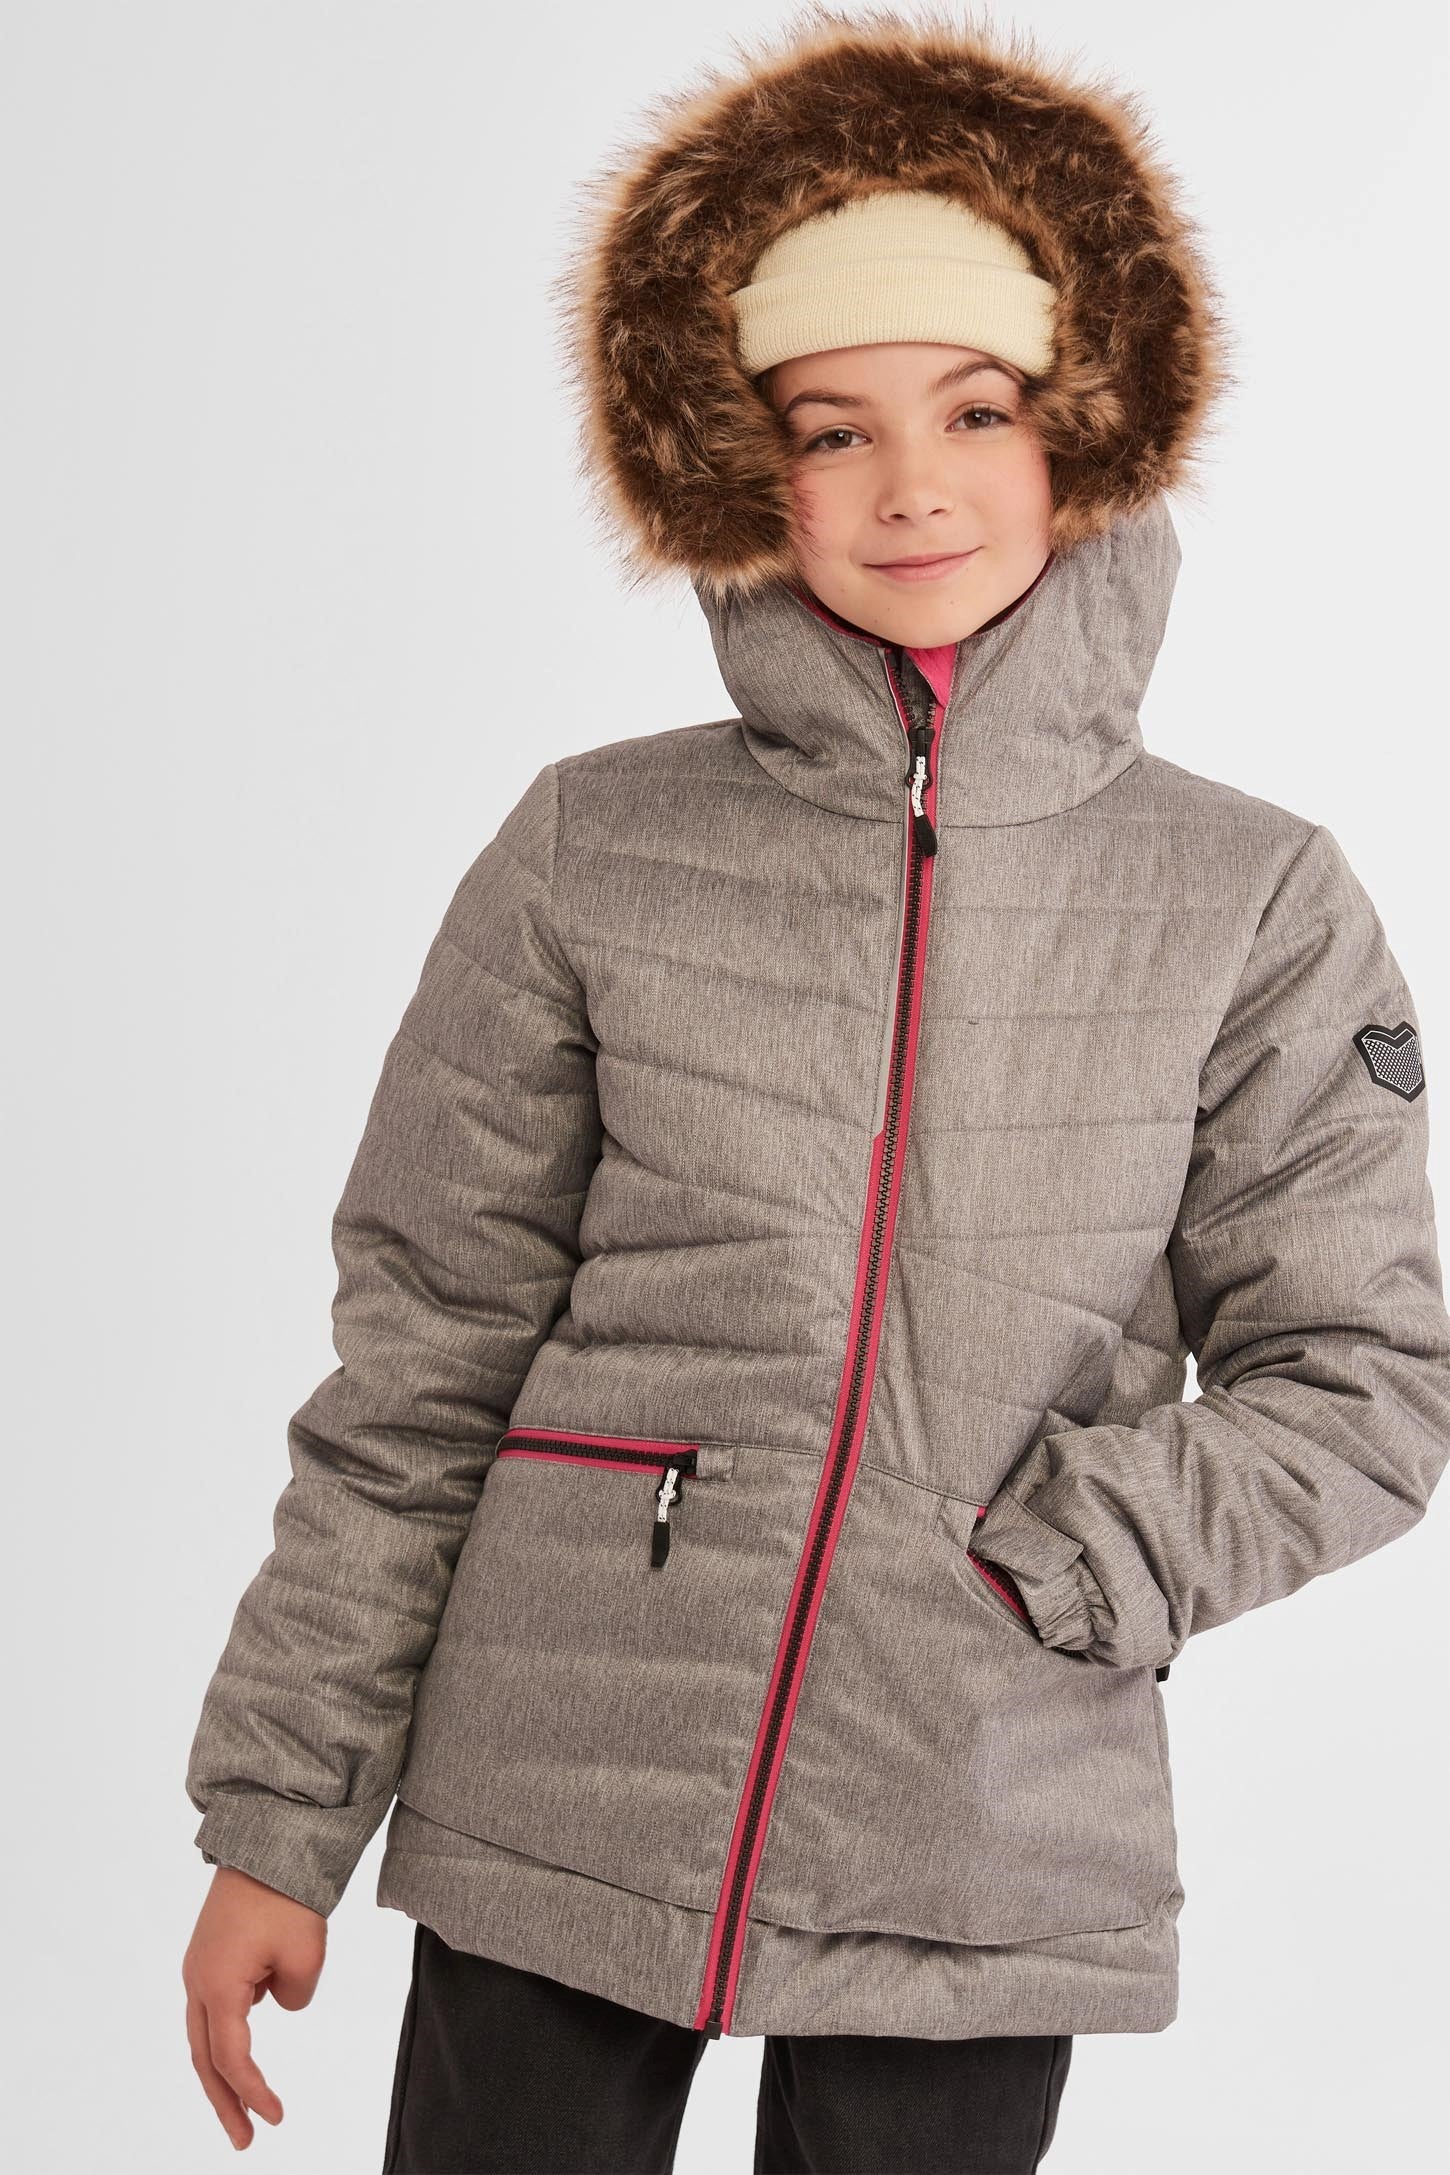 Manteau de ski hiver - Ado fille && GRIS MIXTE